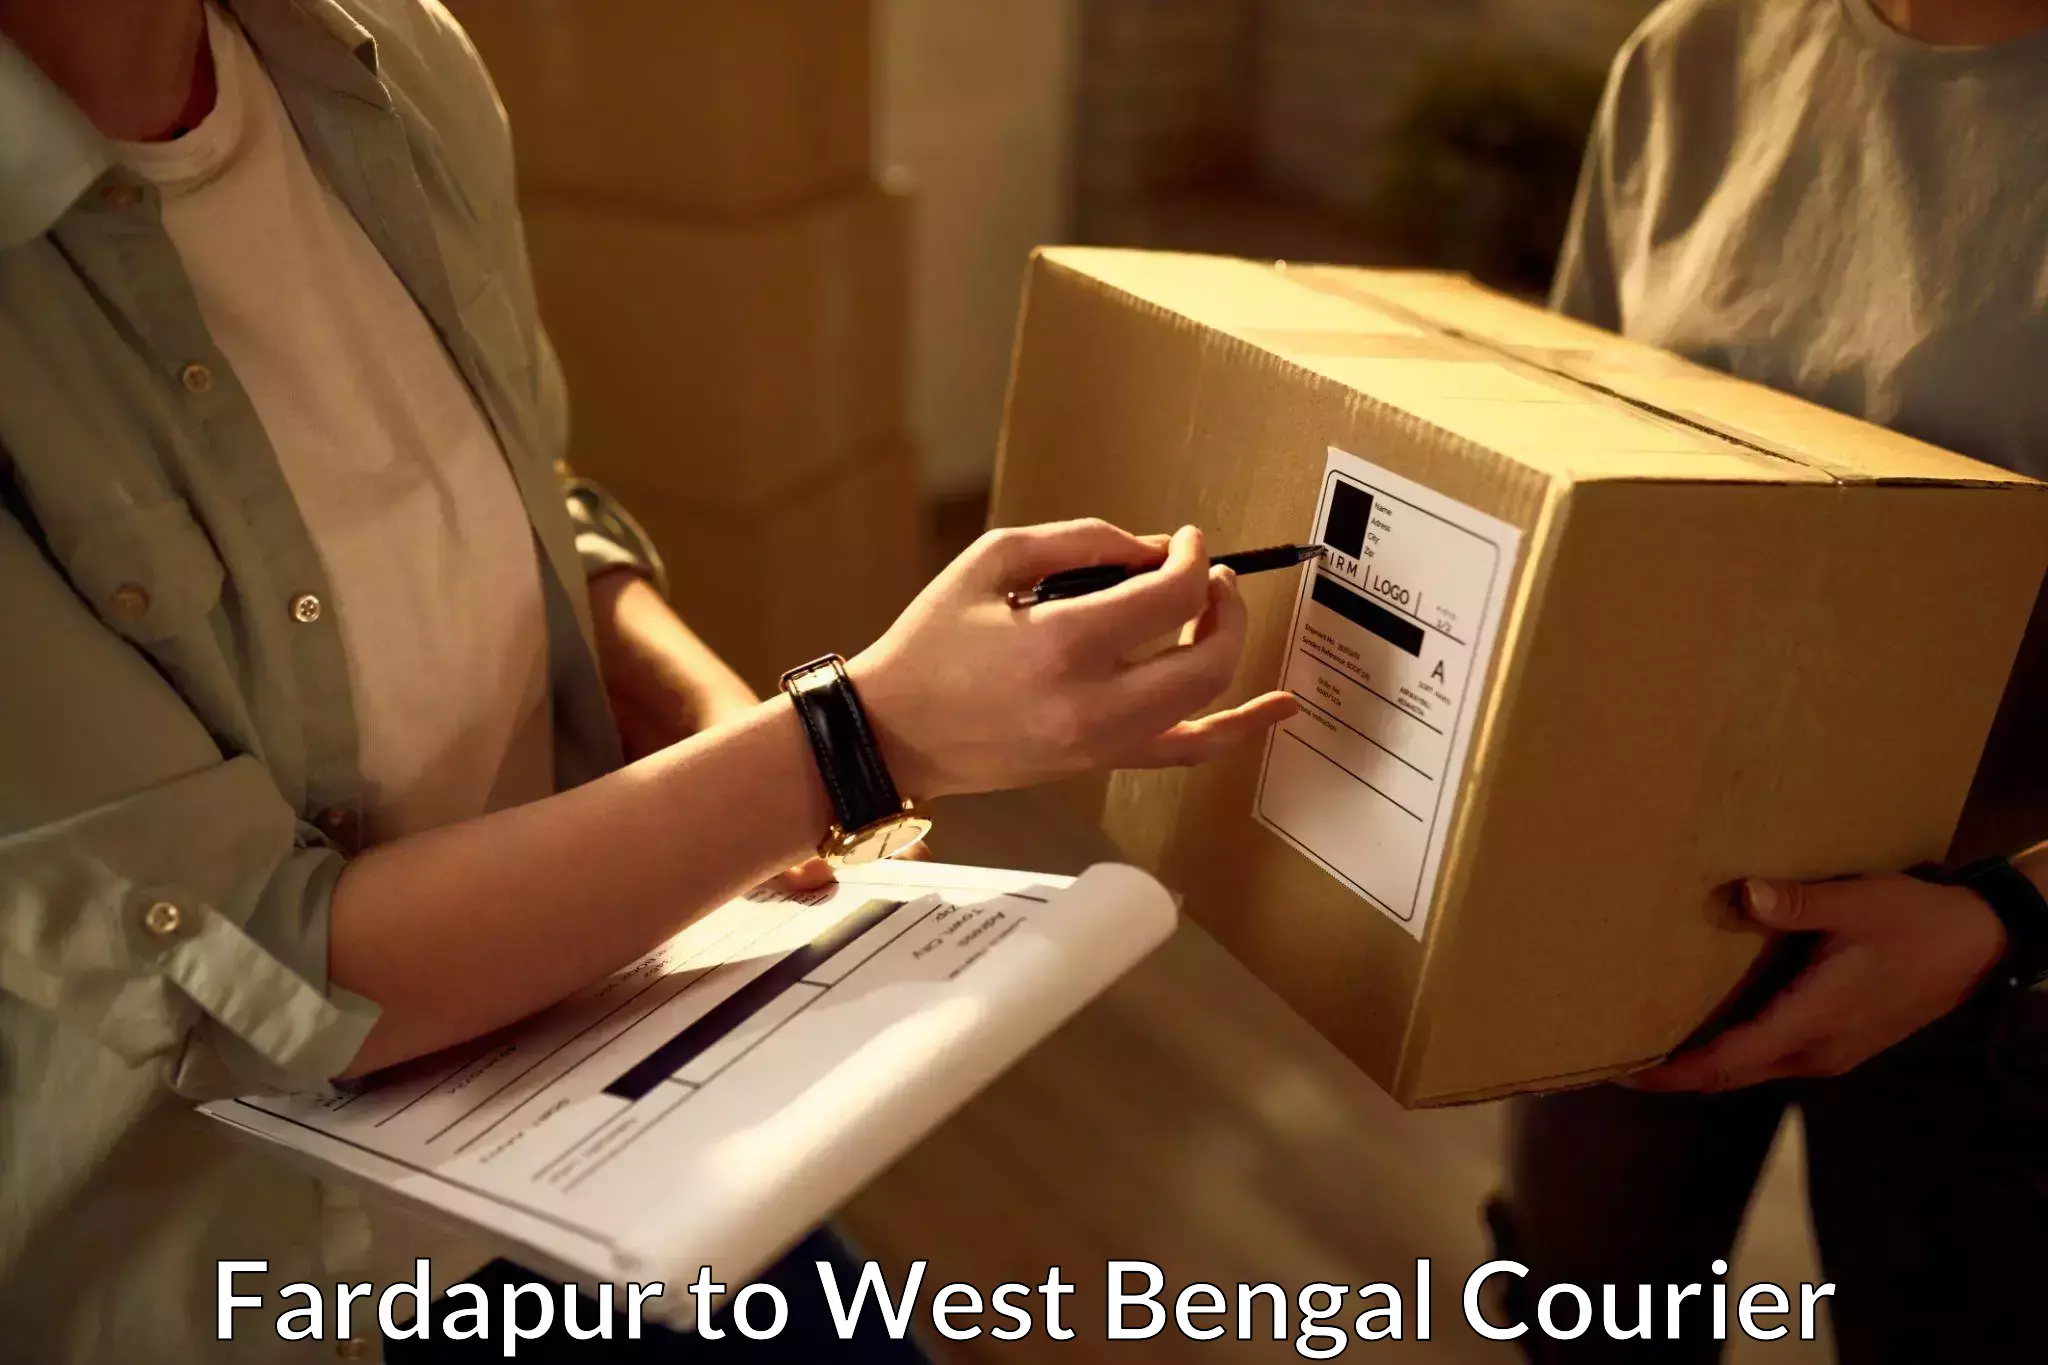 Local delivery service Fardapur to Medinipur